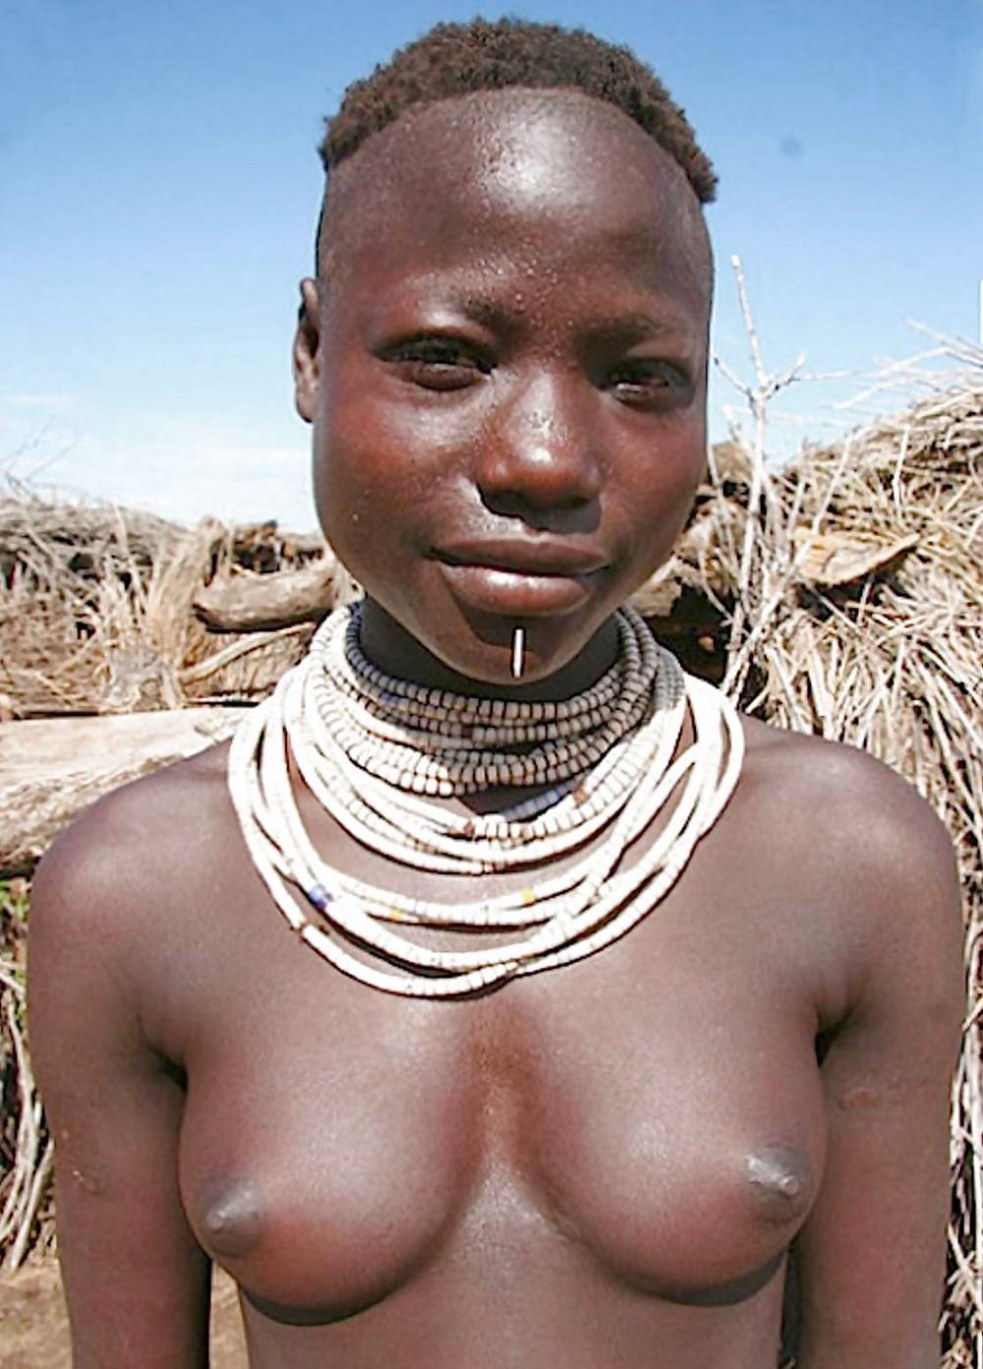 голая девушка африканских племен фото фото 112